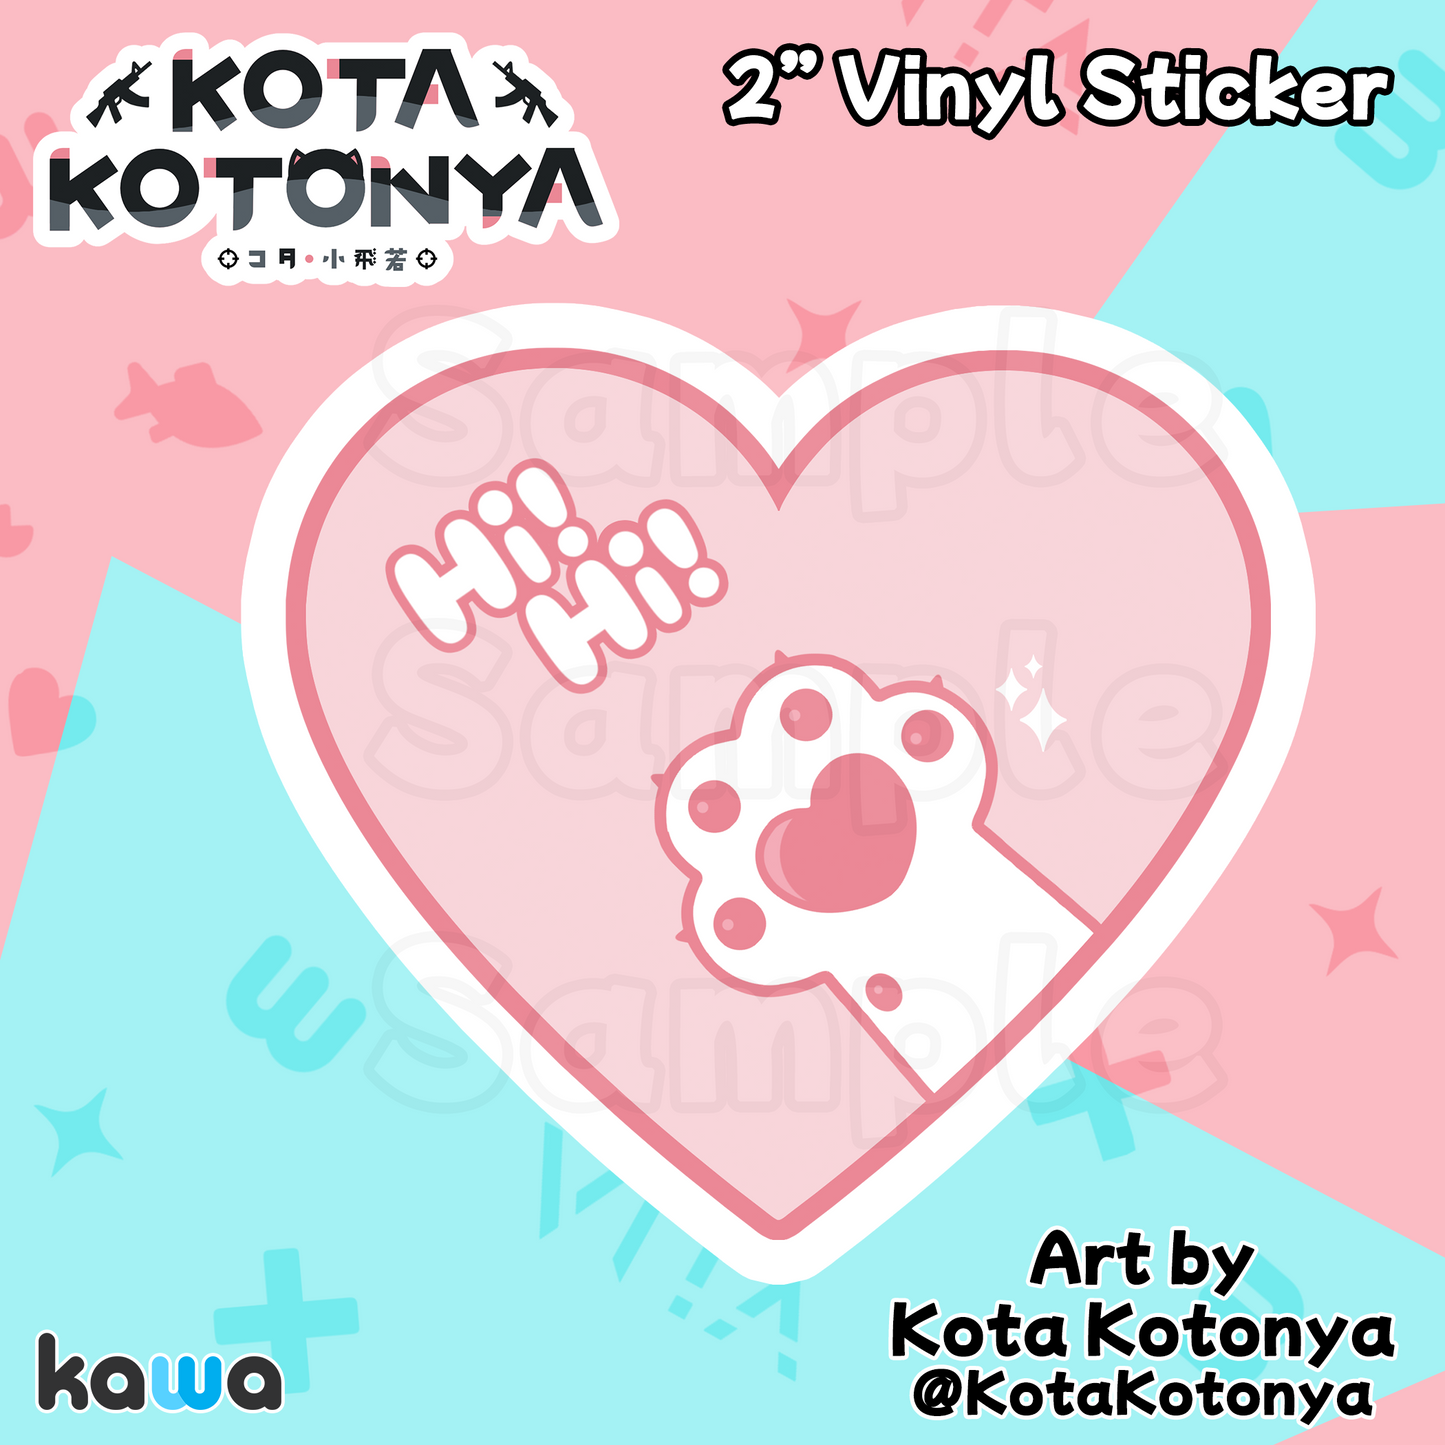 Kota Kotonya - Stickers